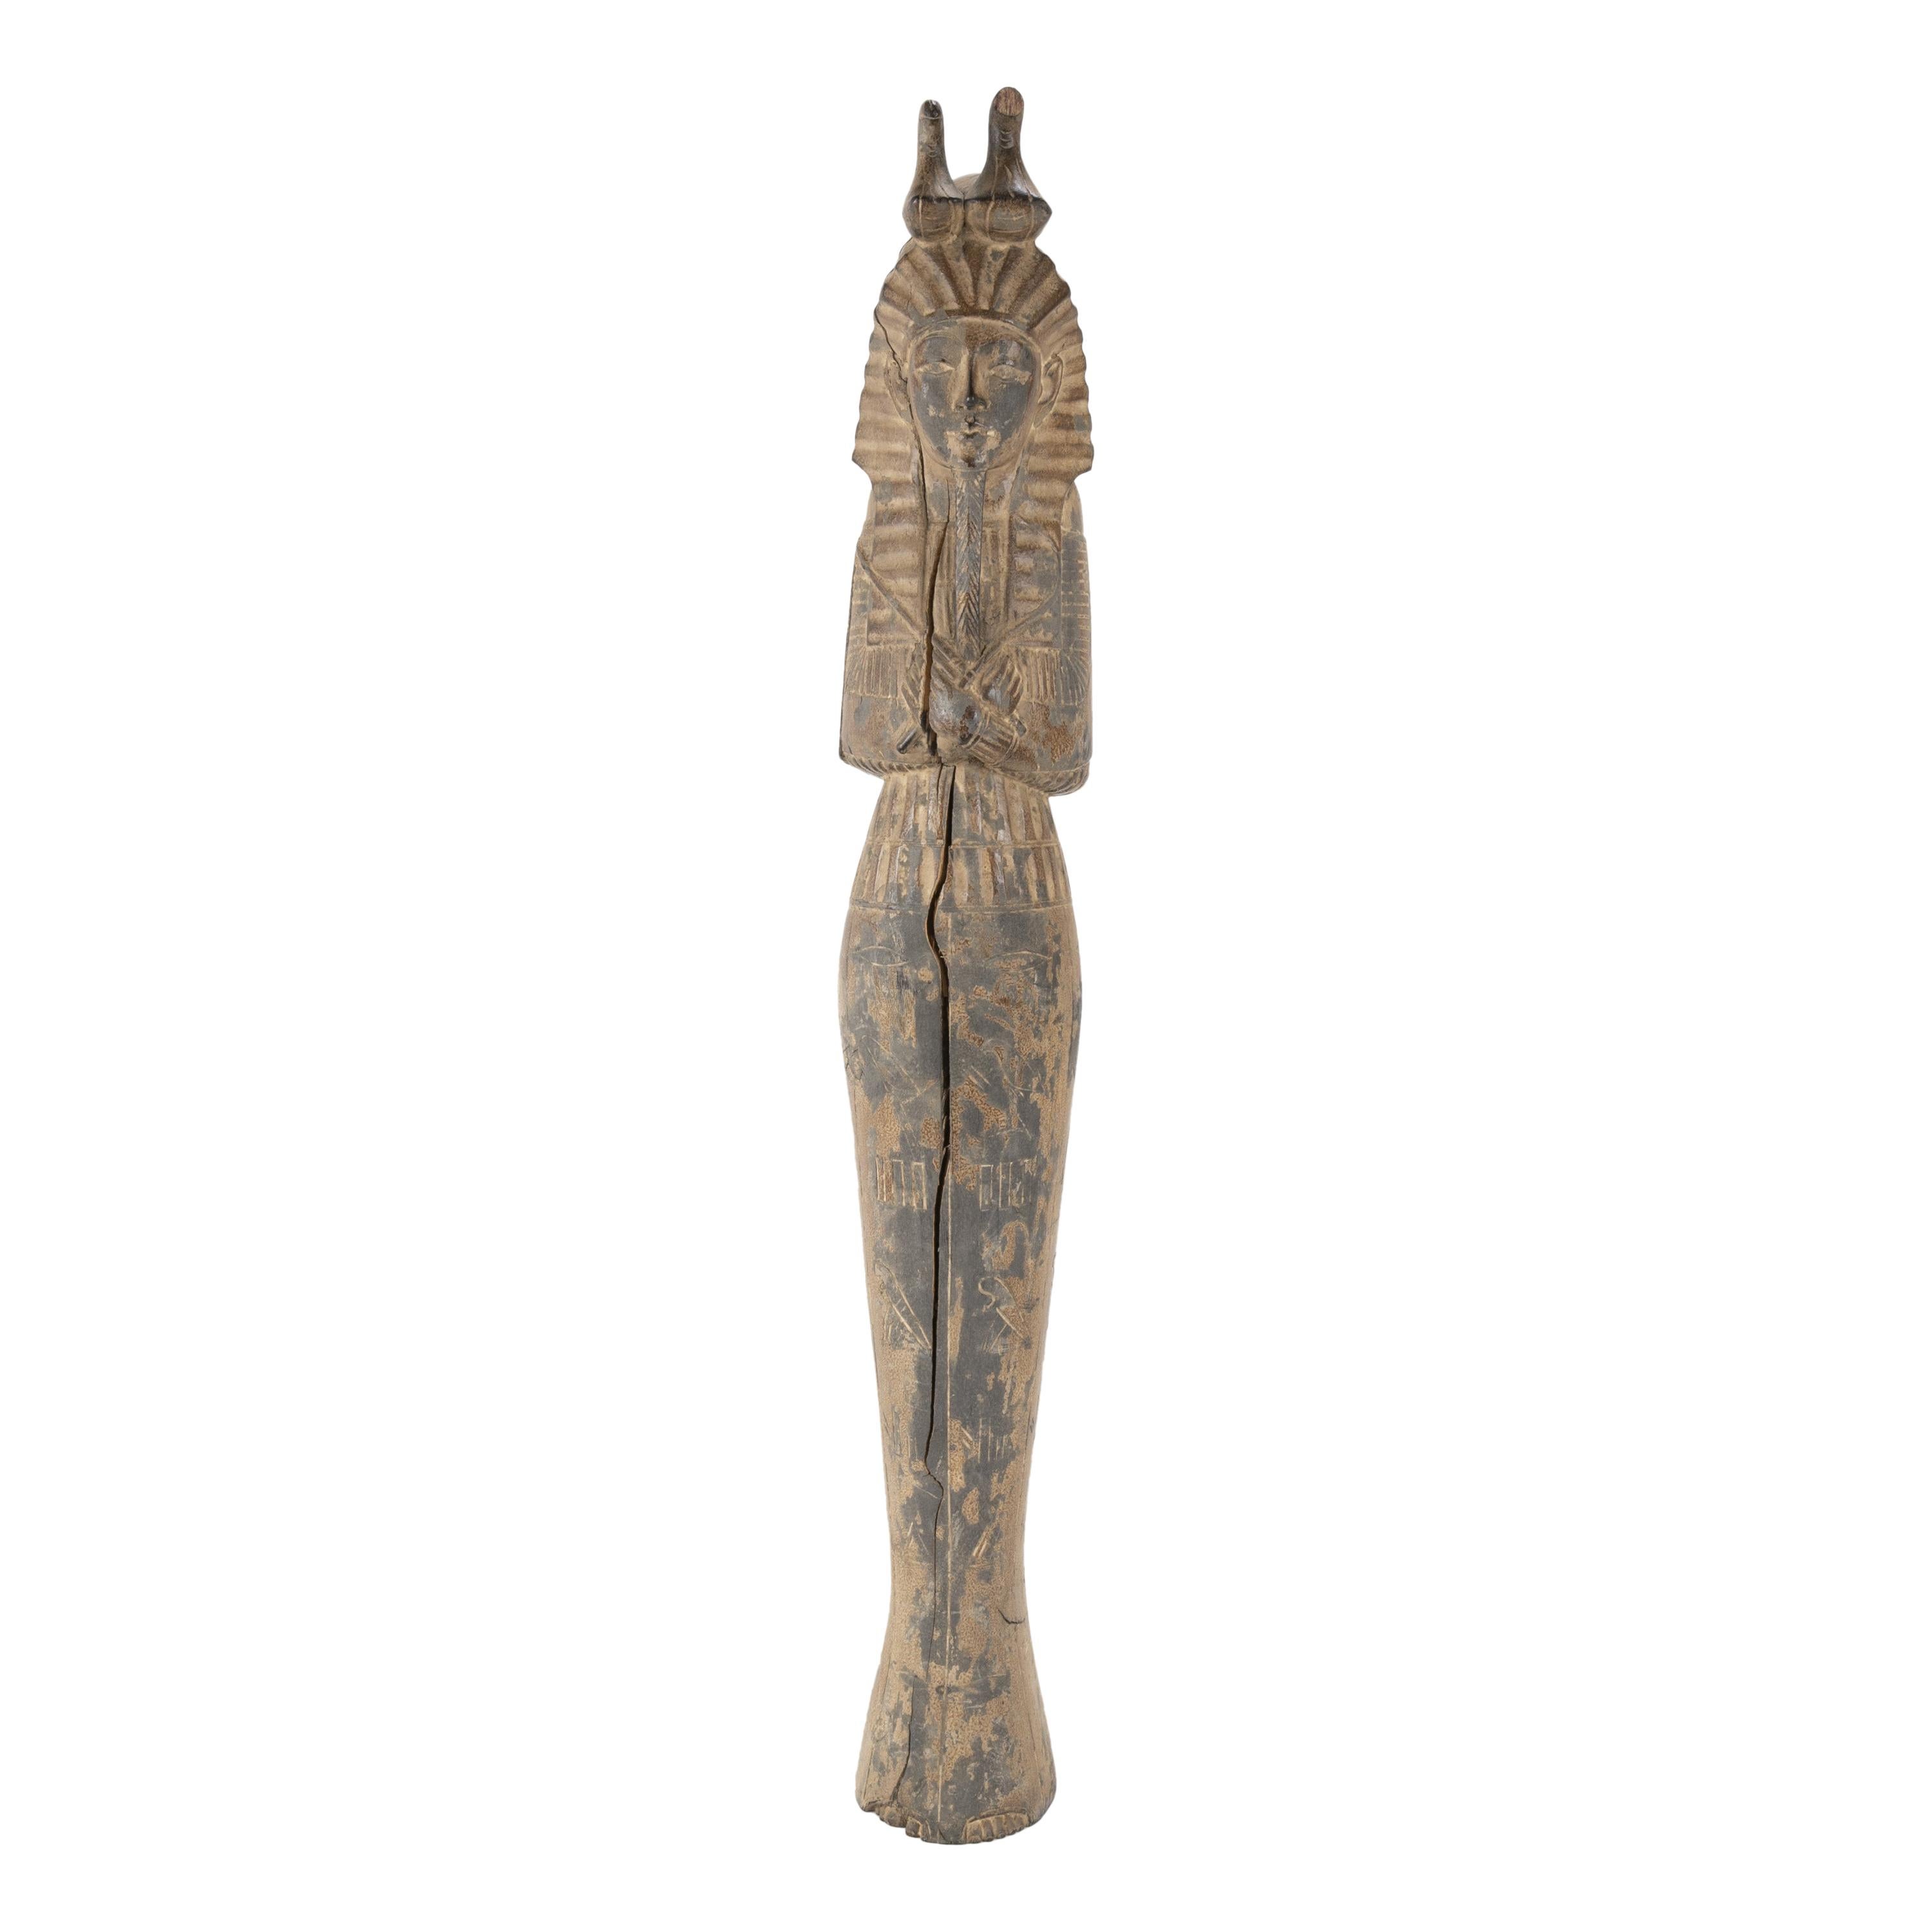 Figure du roi Toutankamon en bois sculpté de style néo-égyptien français